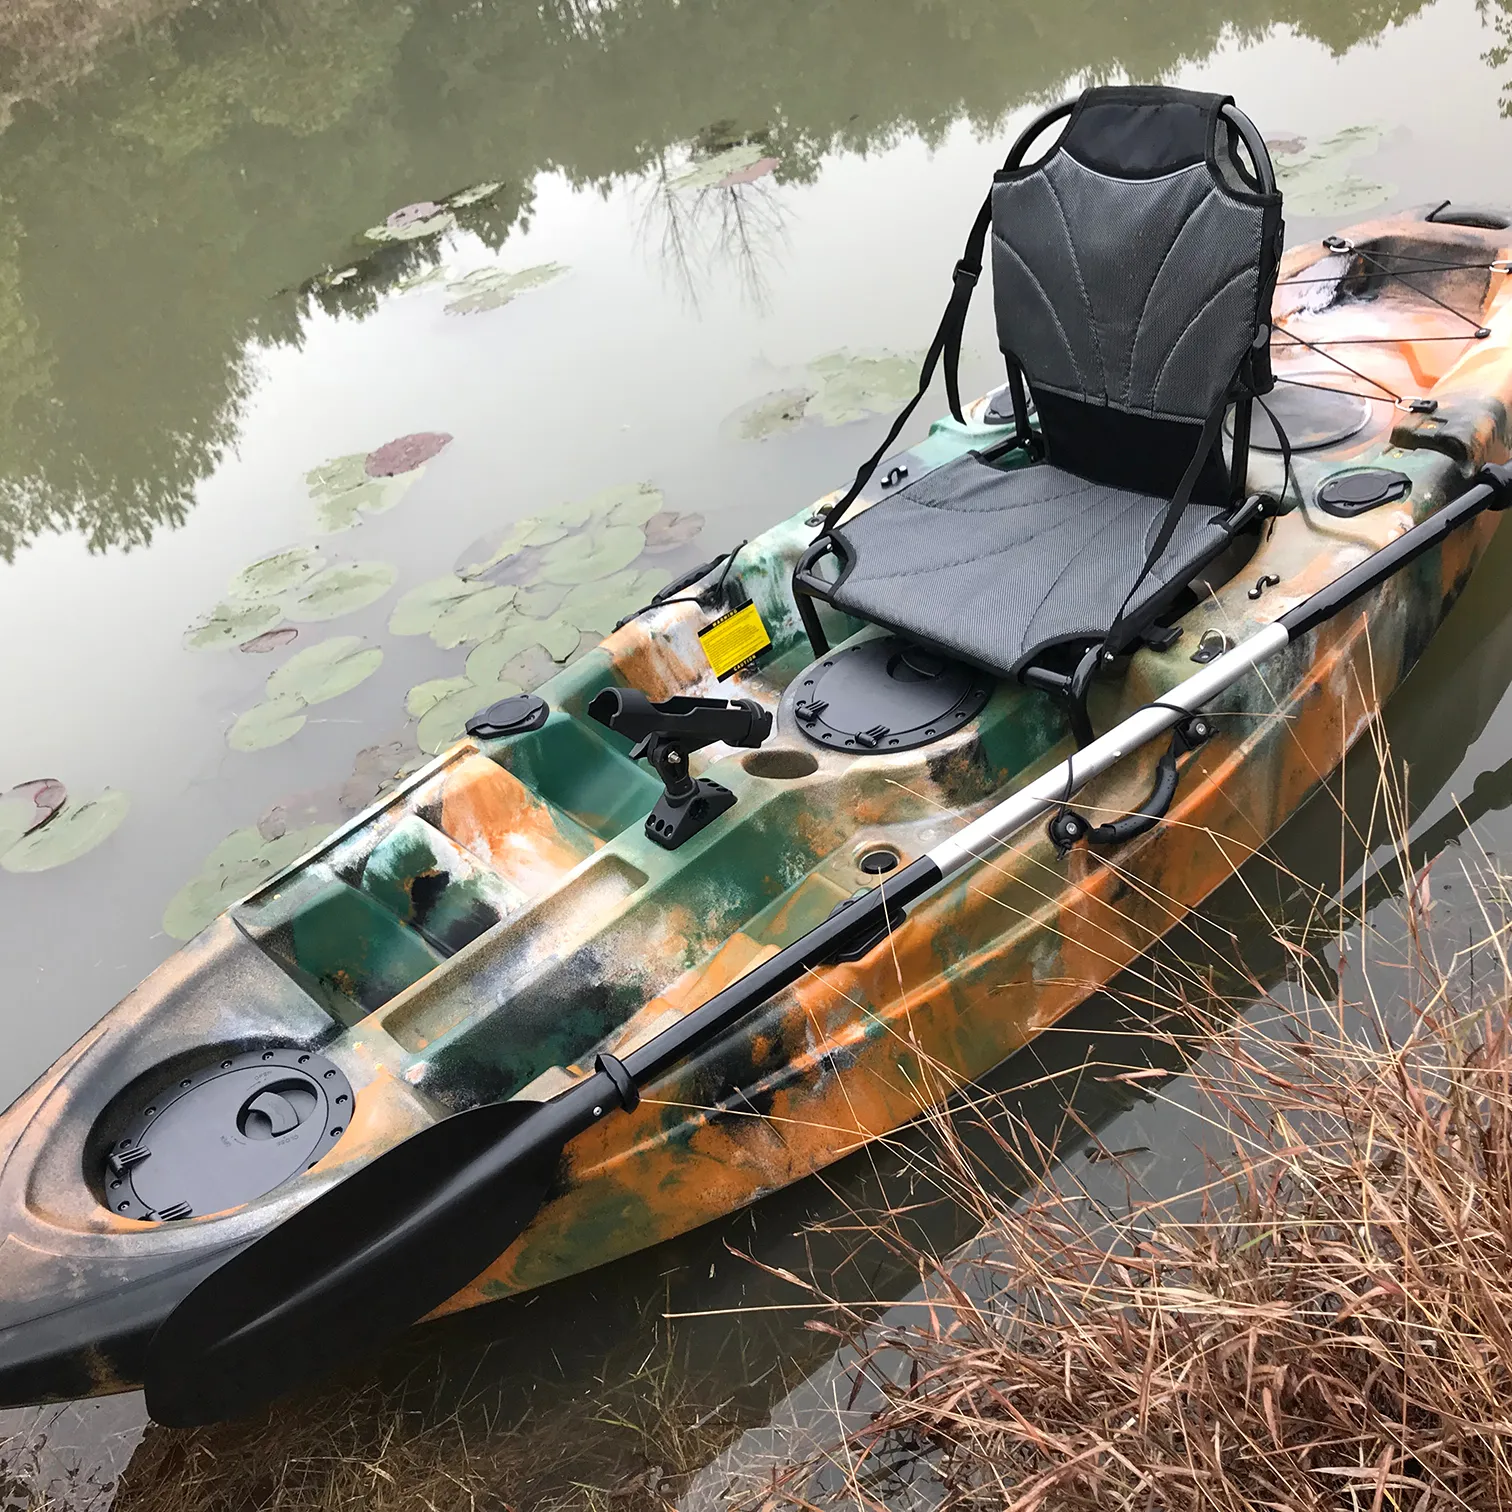 Barato precio bajo kayak HDPE roto molde kayak solo sentarse en la parte superior kayak 1 persona pesca